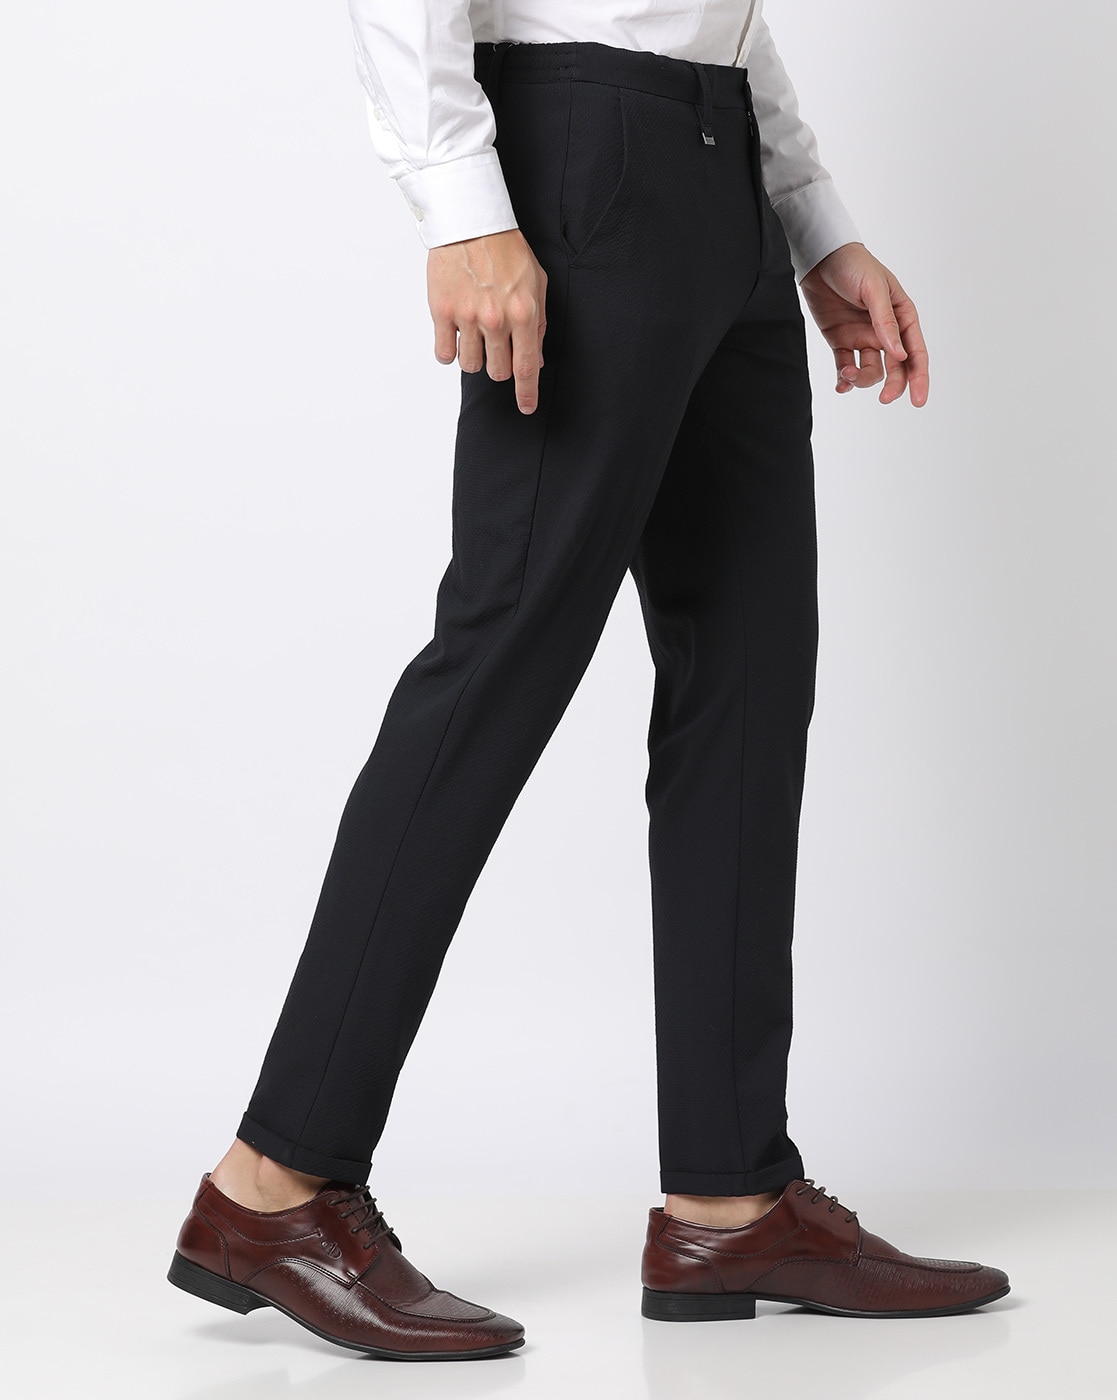 Netplay Regular Fit Men Beige Trousers  Buy Beige Netplay Regular Fit Men  Beige Trousers Online at Best Prices in India  Flipkartcom